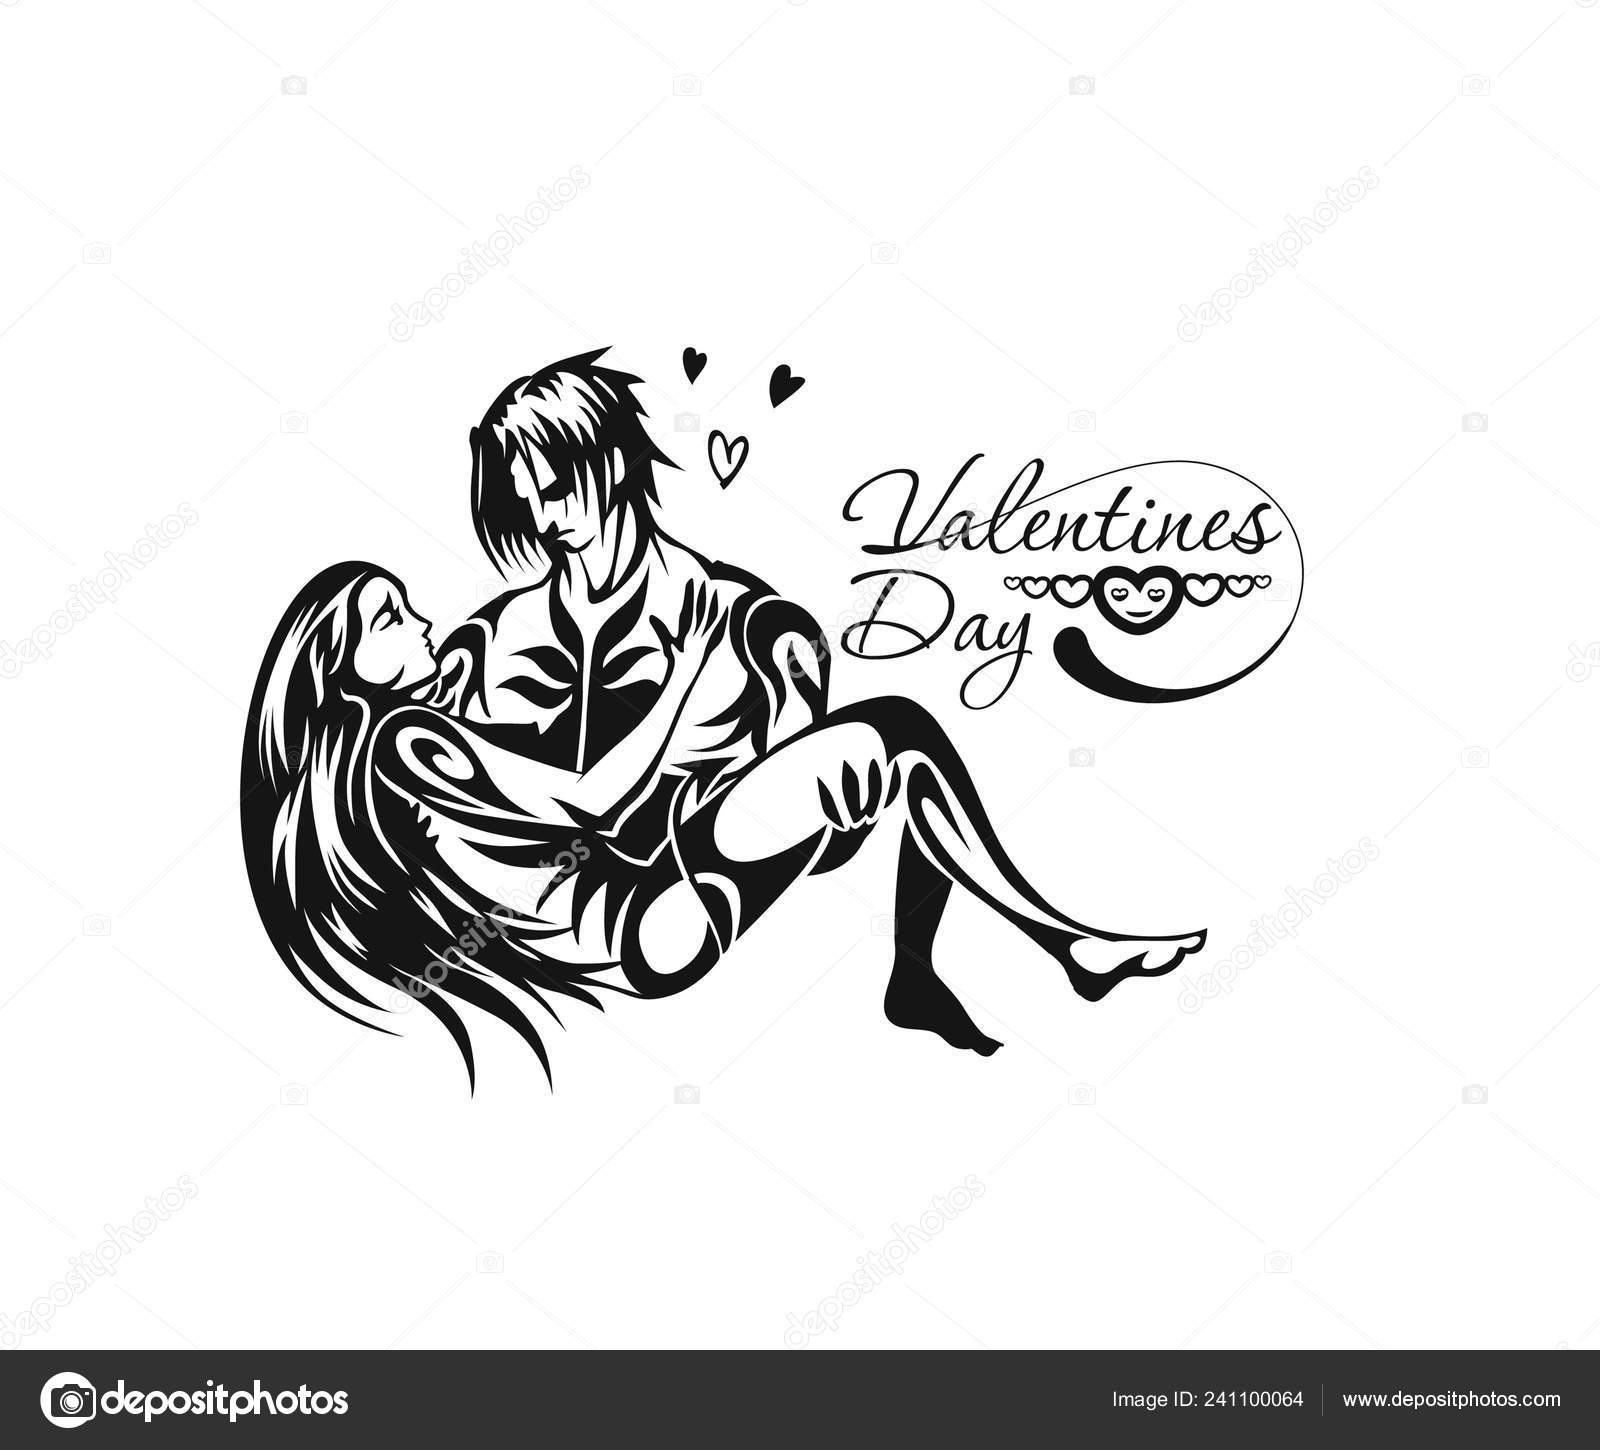 Valentine Sketch Images - Free Download on Freepik